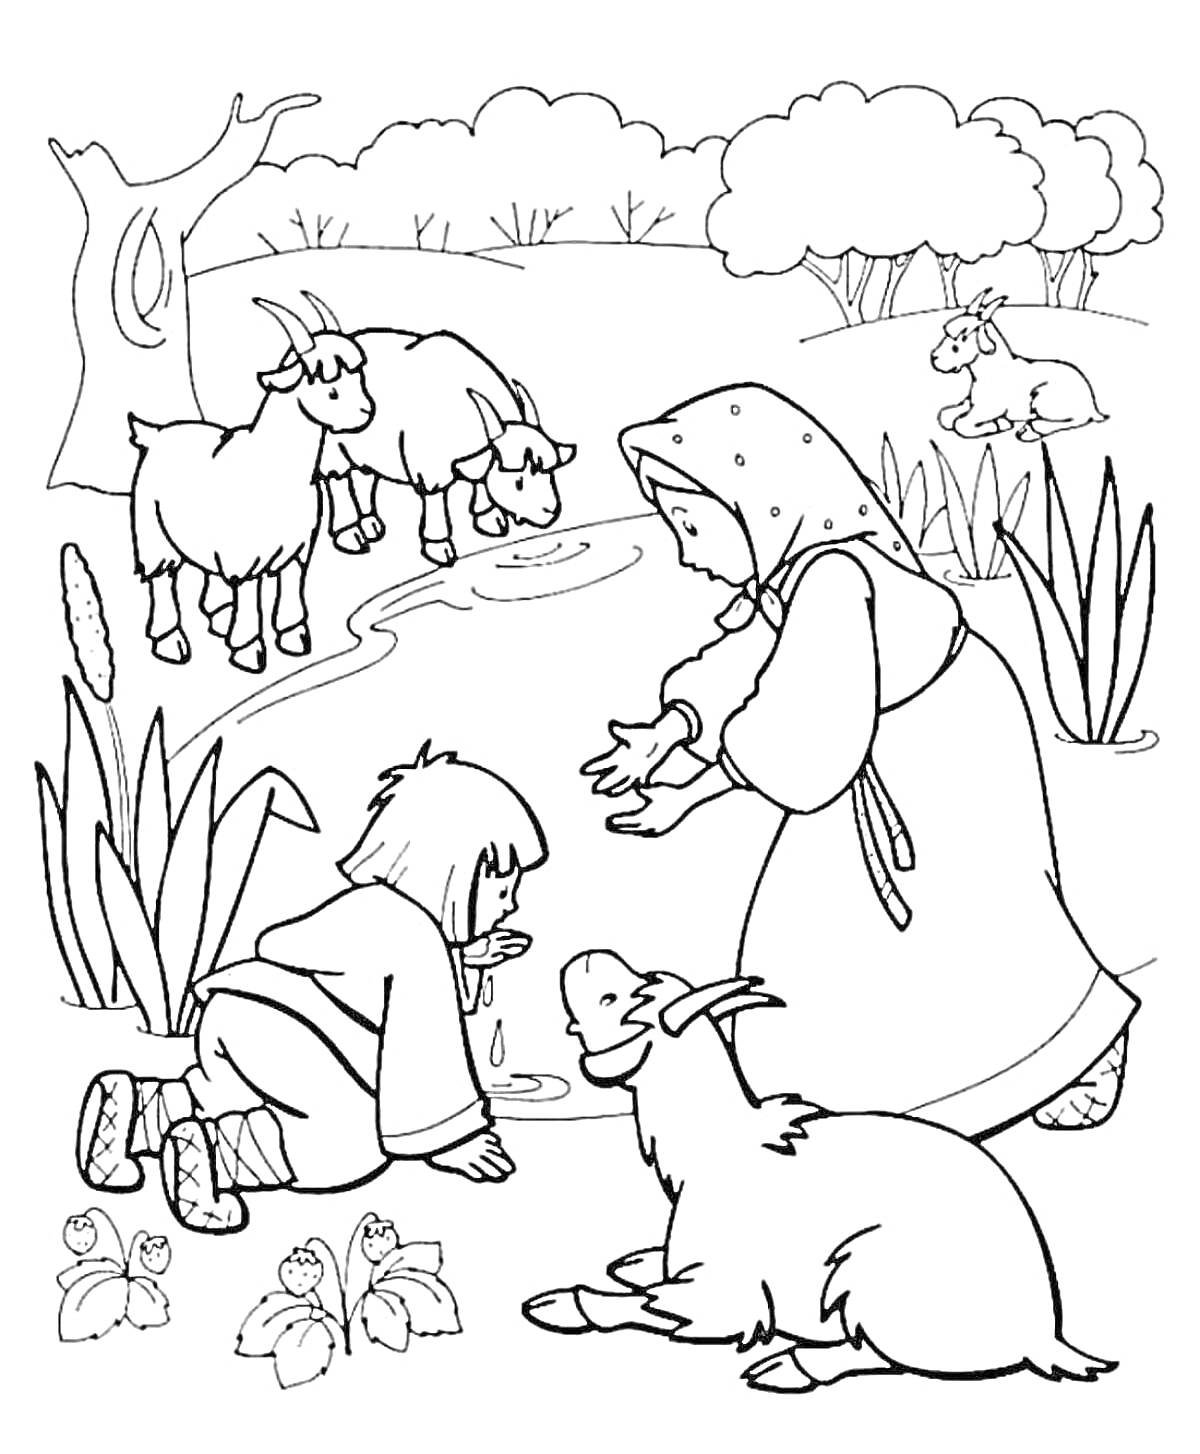 Раскраска Женщина в традиционной одежде, ребенок, козы, природа с кустами и деревьями, растения у воды